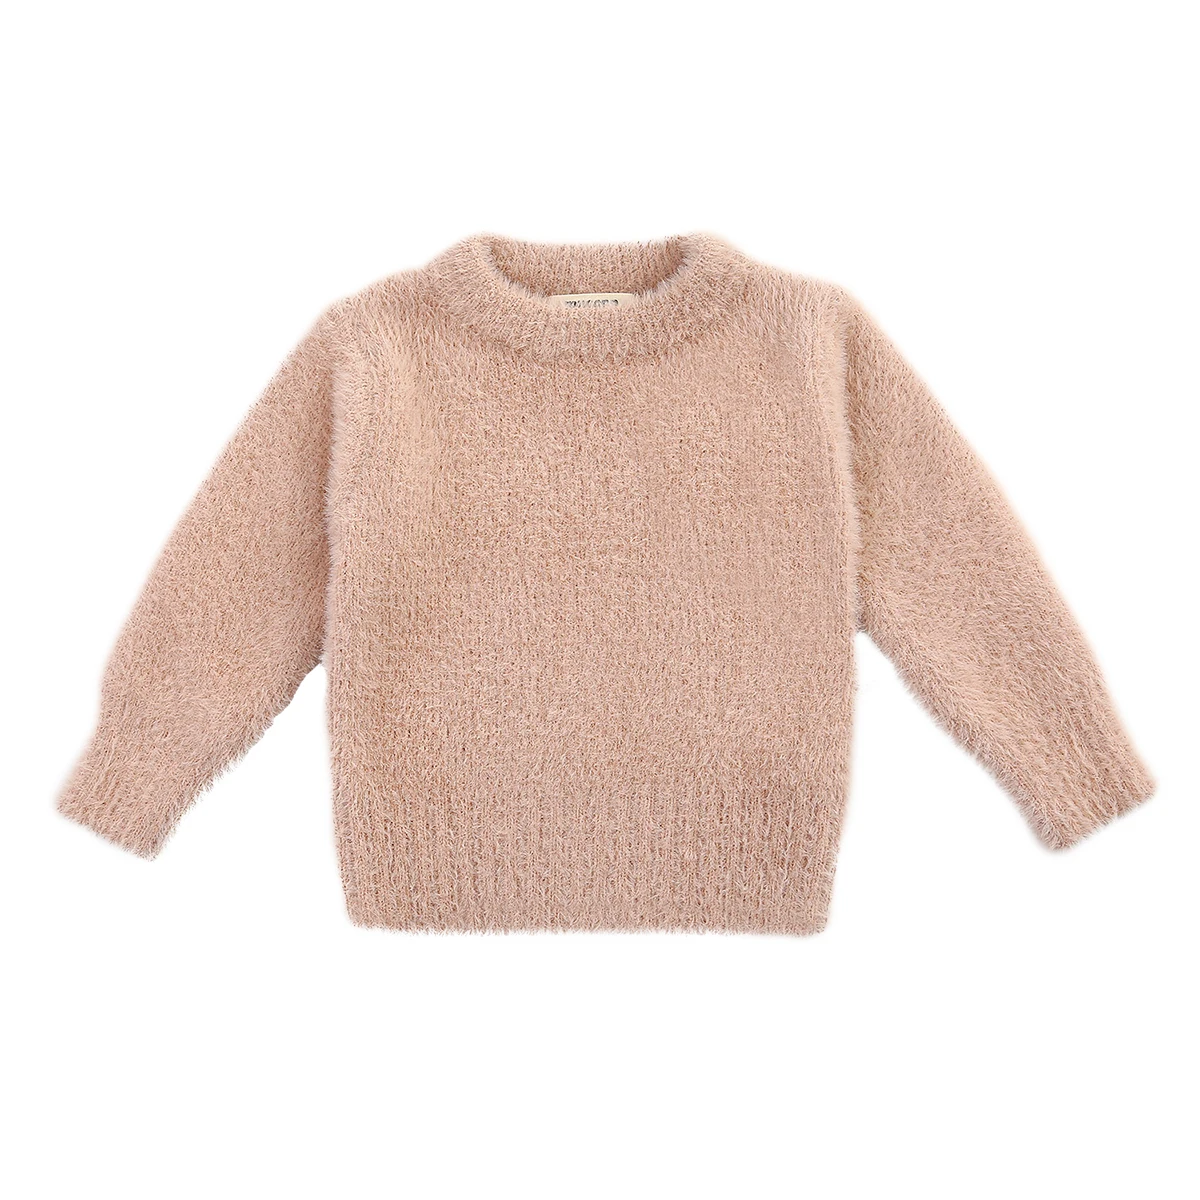 Girls' Sweaters Winter Wear New Imitation Mink Jacket Sweater 1-3 Year Old Baby Warm Coat Kids Sweaters